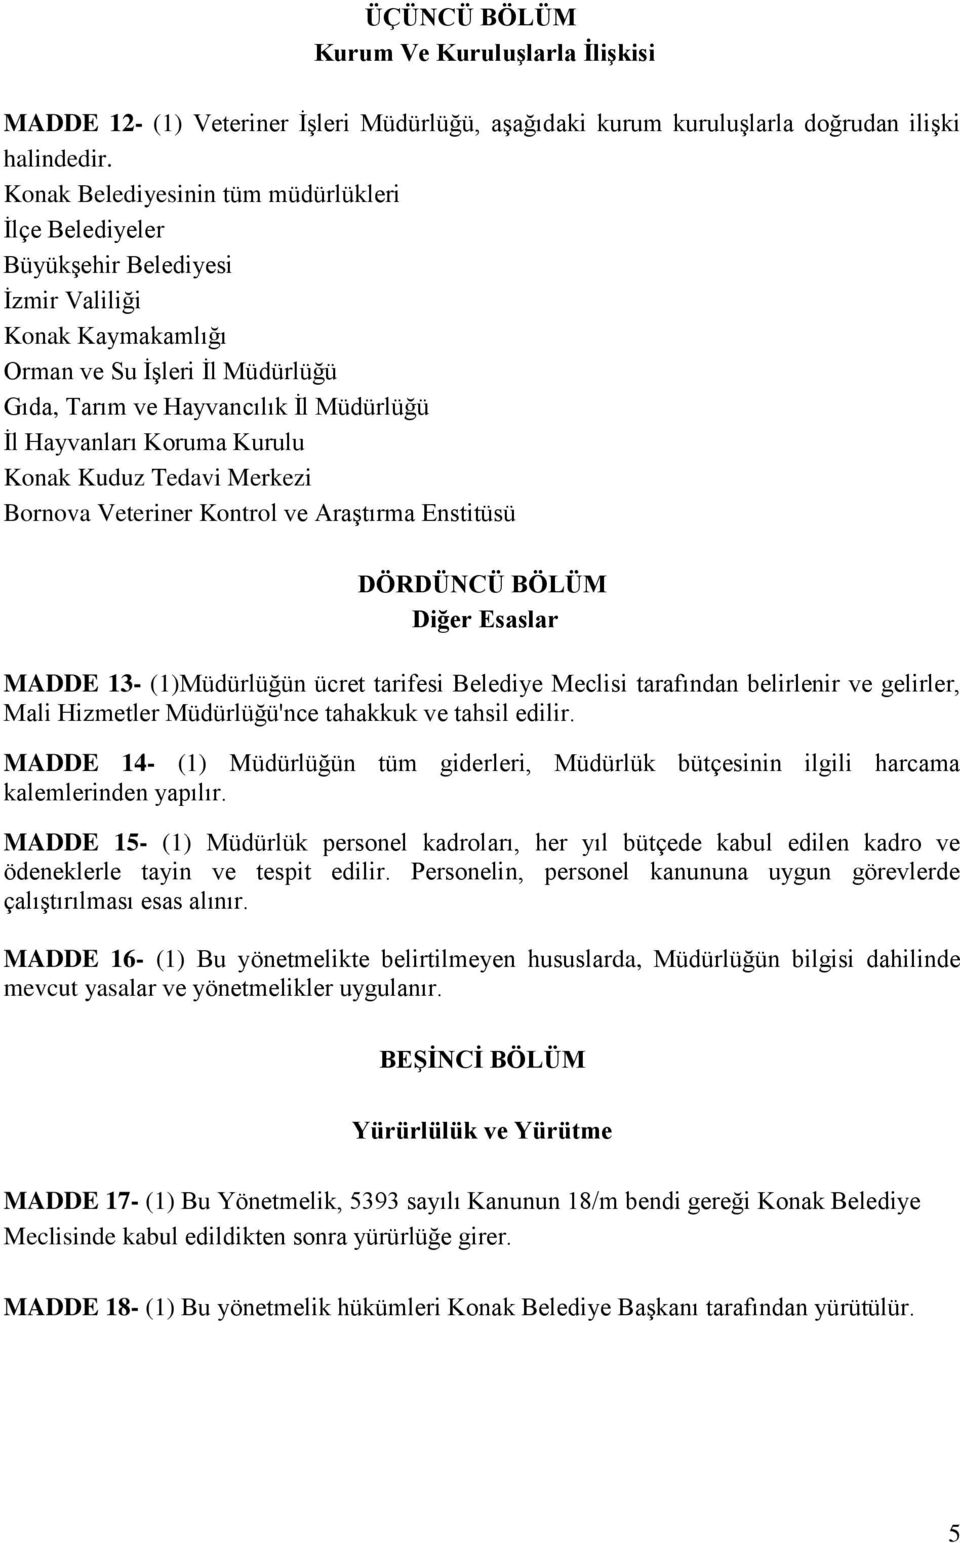 Koruma Kurulu Konak Kuduz Tedavi Merkezi Bornova Veteriner Kontrol ve Araştırma Enstitüsü DÖRDÜNCÜ BÖLÜM Diğer Esaslar MADDE 13- (1)Müdürlüğün ücret tarifesi Belediye Meclisi tarafından belirlenir ve